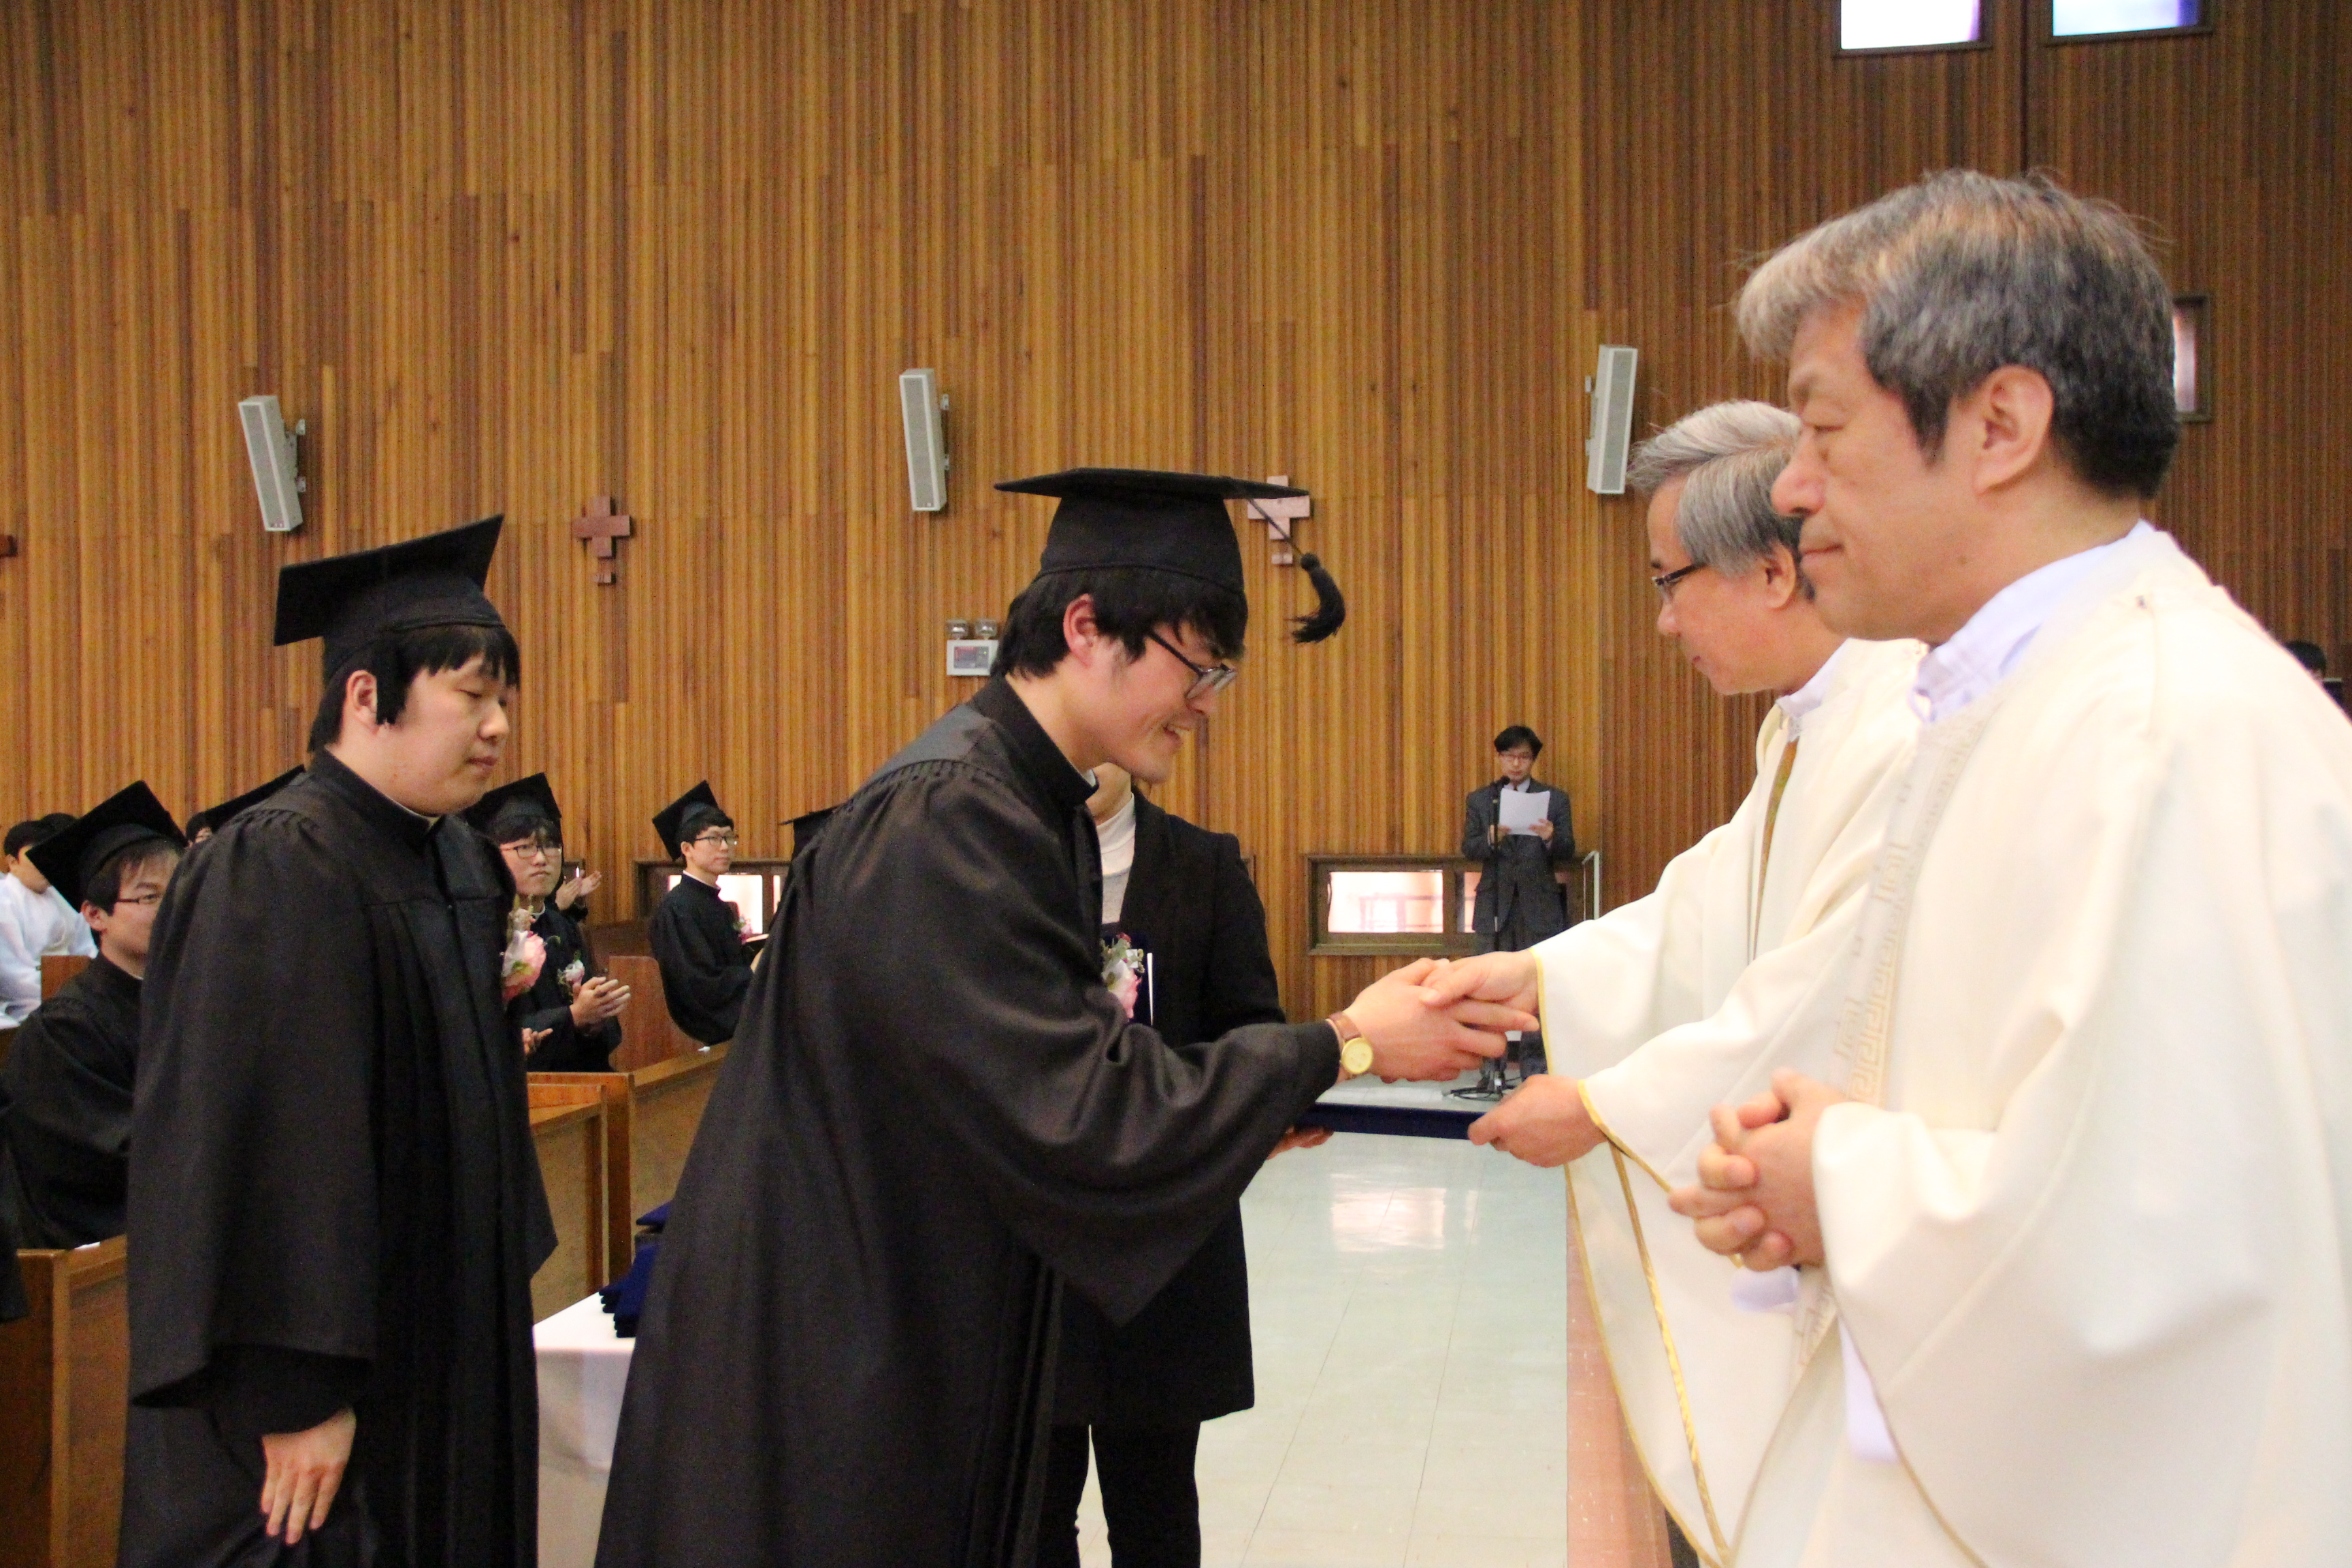 신학대학 졸업식 및 대학원 학위 수여식(2013.2.25)의 관련된 이미지 입니다.